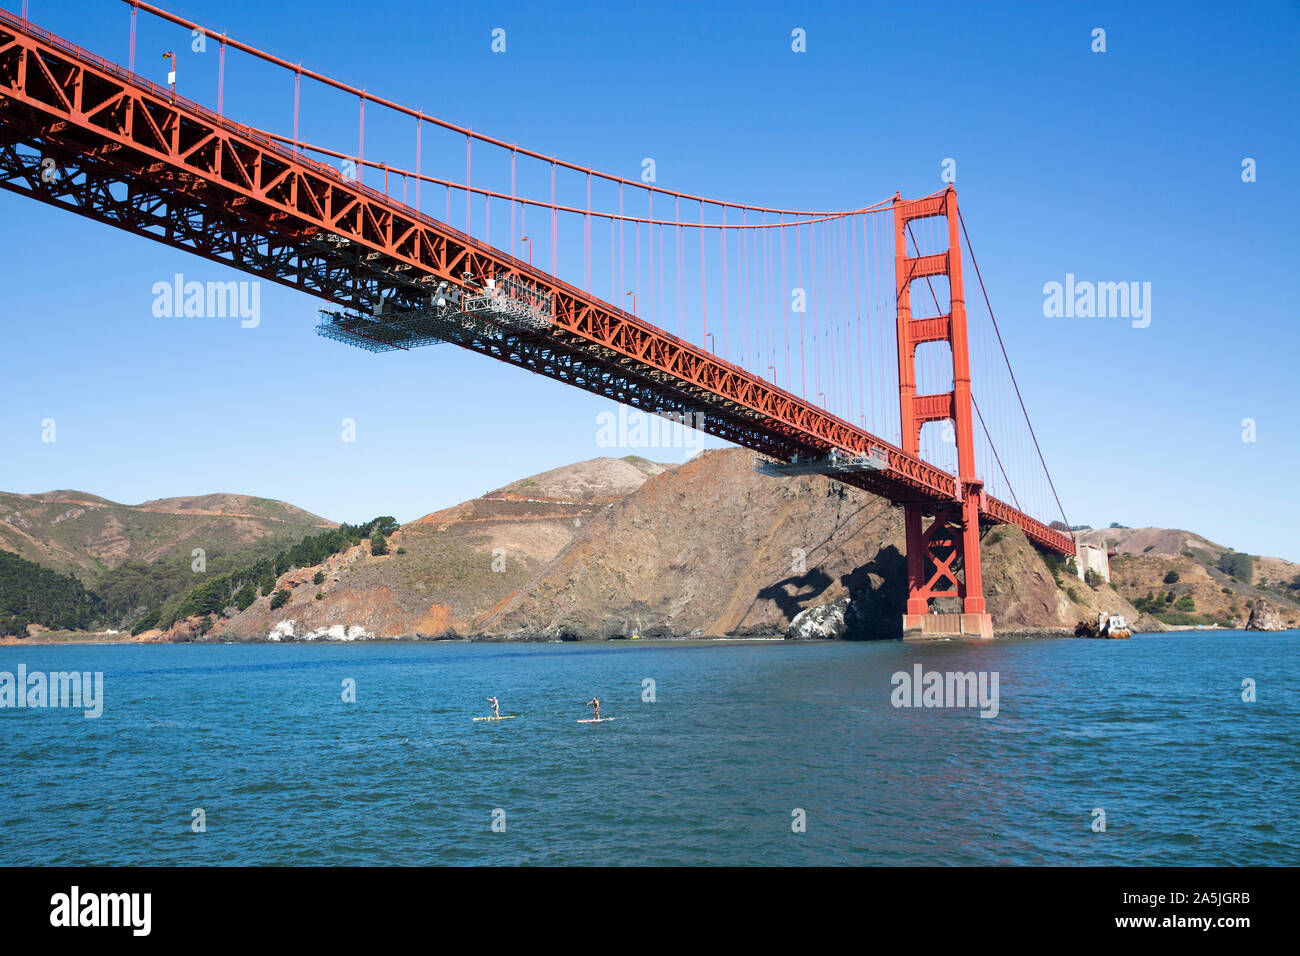 SAN FRANCISCO, Estados Unidos - 8 de septiembre de 2019 : 2 personas en el Stand Up Paddle boards en la Bahía de San Francisco bajo el puente Golden Gate. Foto de stock